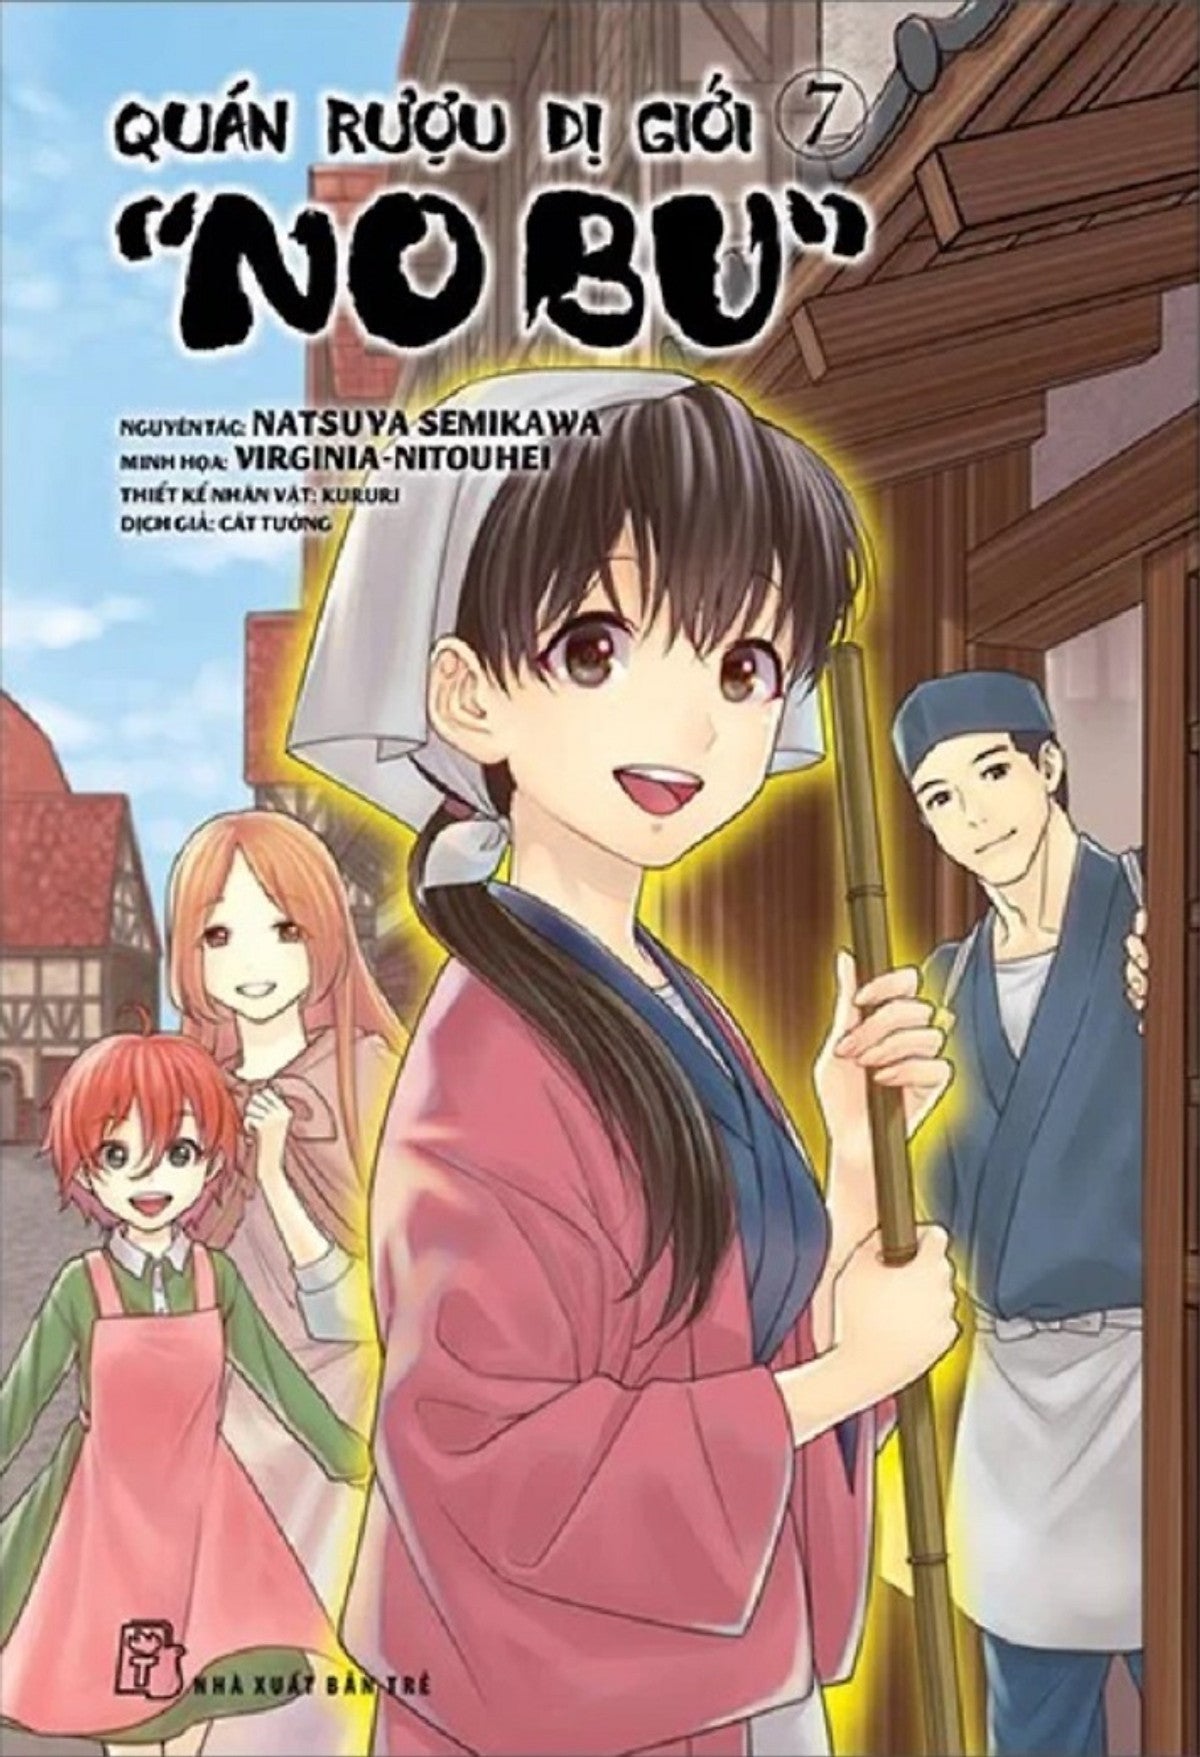 Quán Rượu Dị Giới "Nobu" - Full Tập 1-11